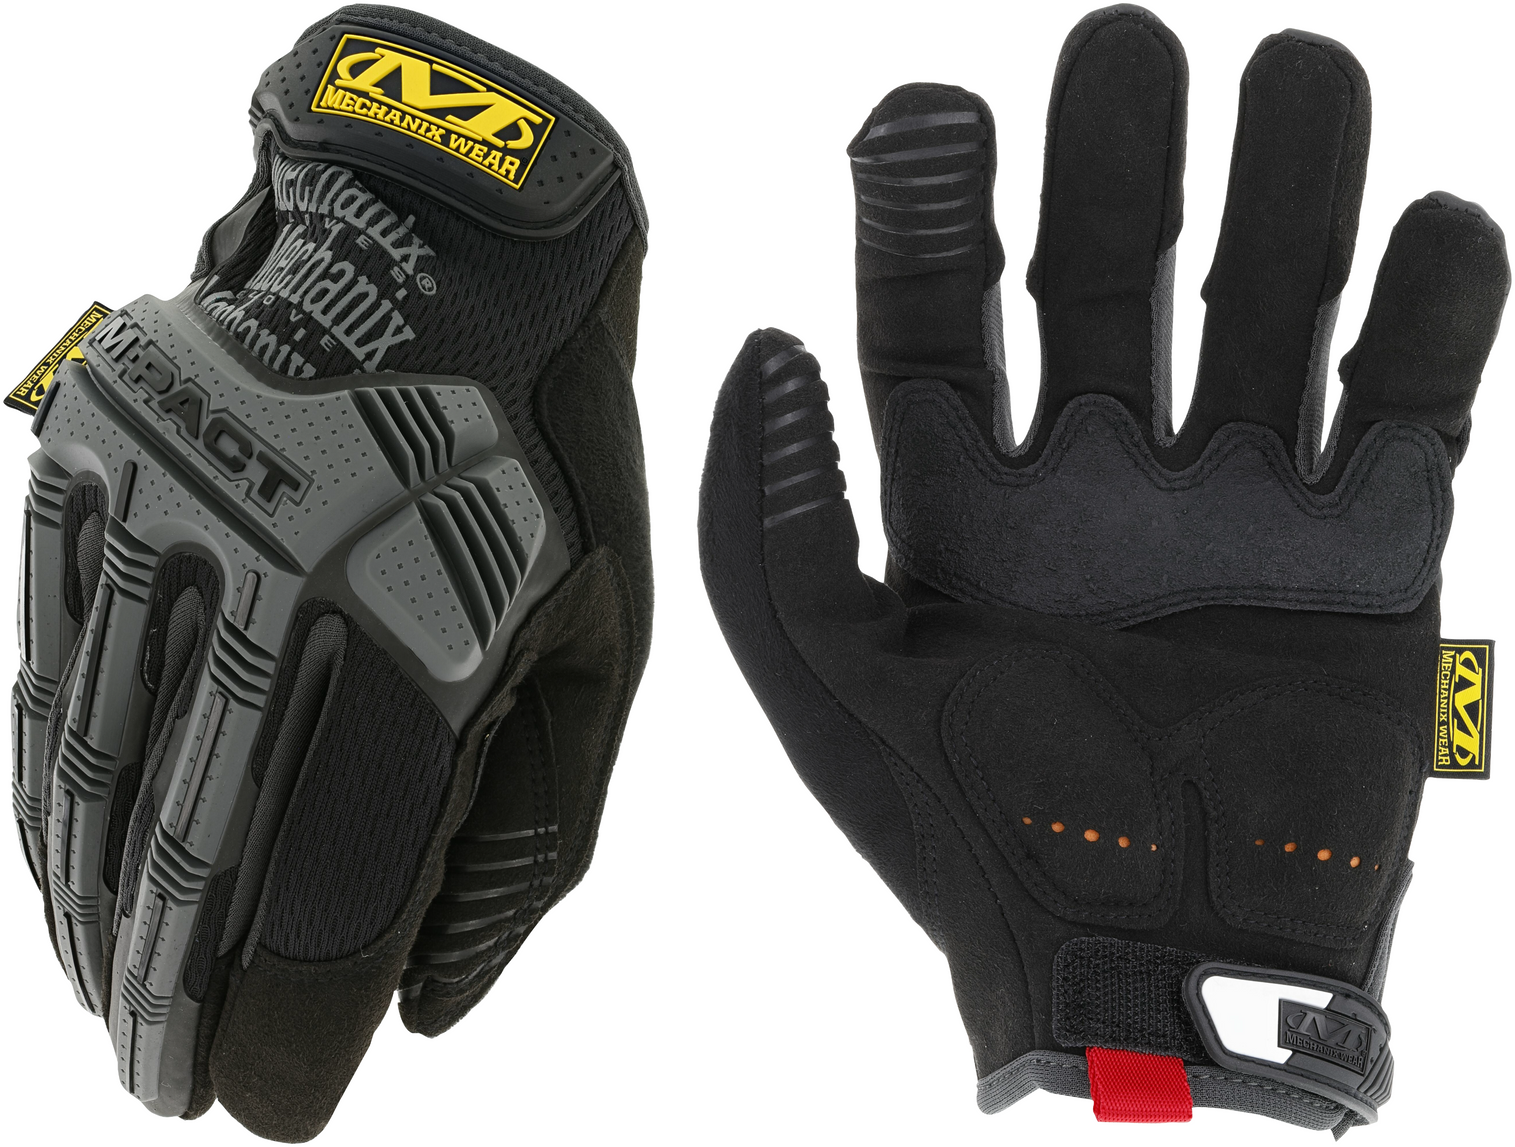 M-pact Glove - KRMX-MPT-58-009